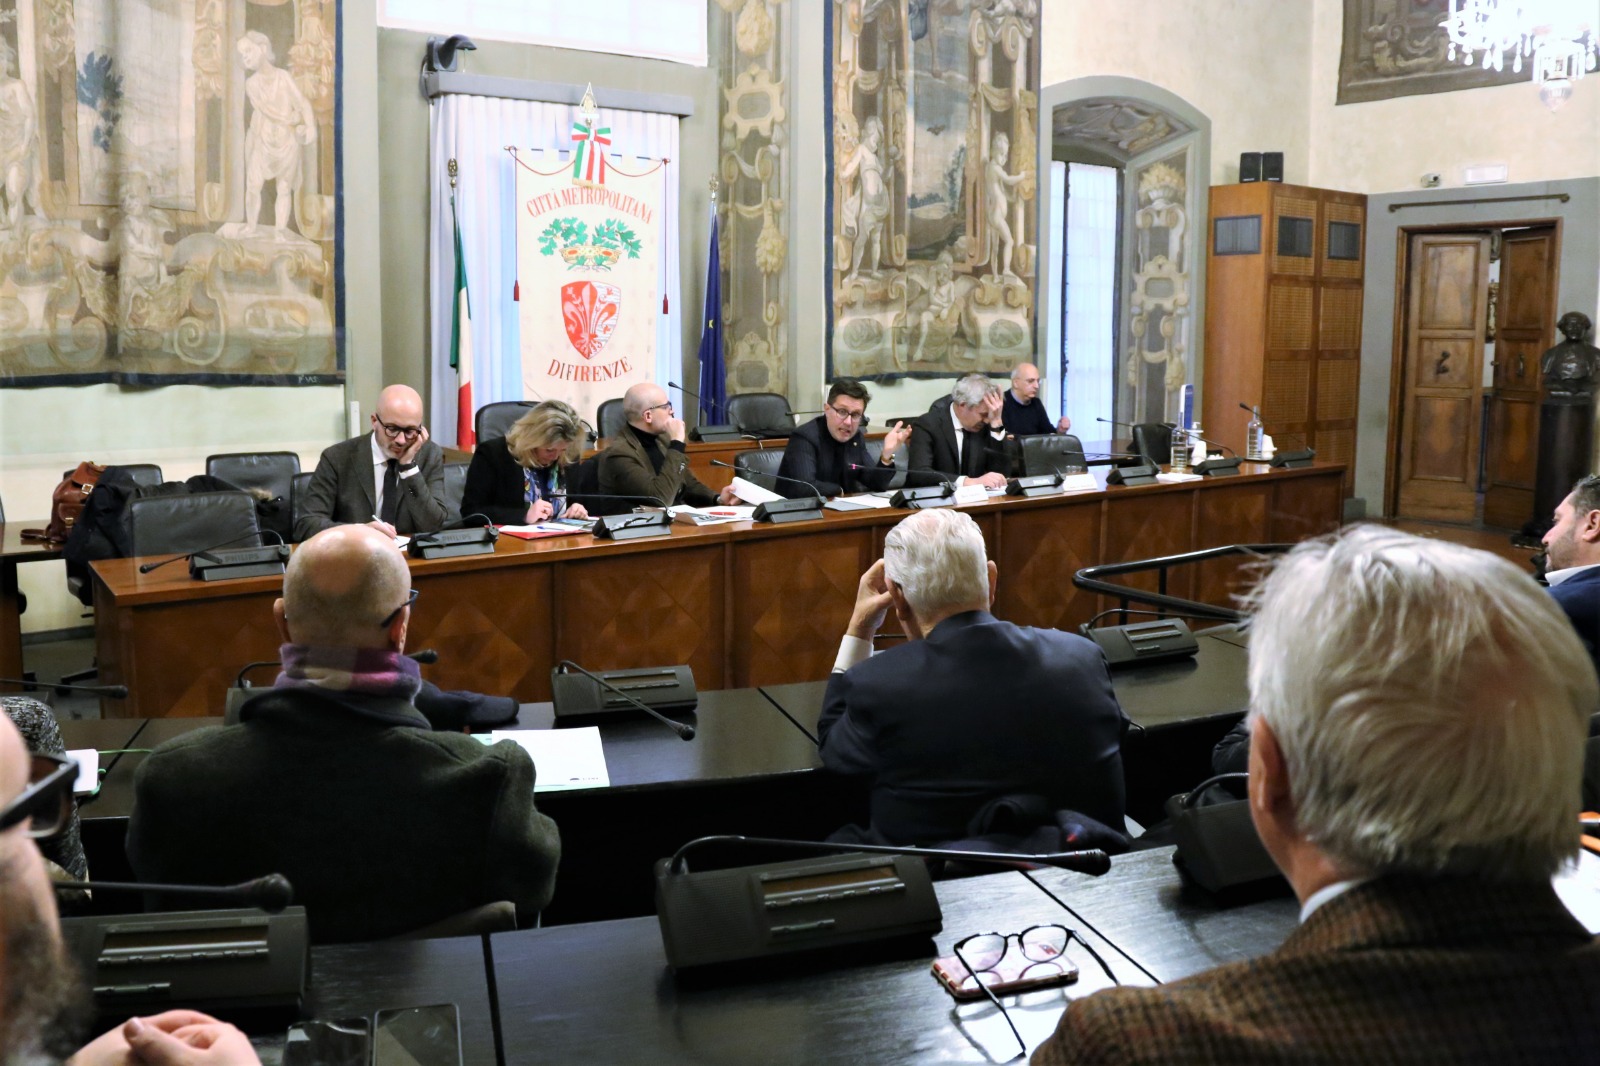 Patto per il lavoro nell'area metropolitana fiorentina. L'incontro di verifica in Palazzo Medici Riccardi (foto di Antonello Serino, Met Ufficio Stampa)